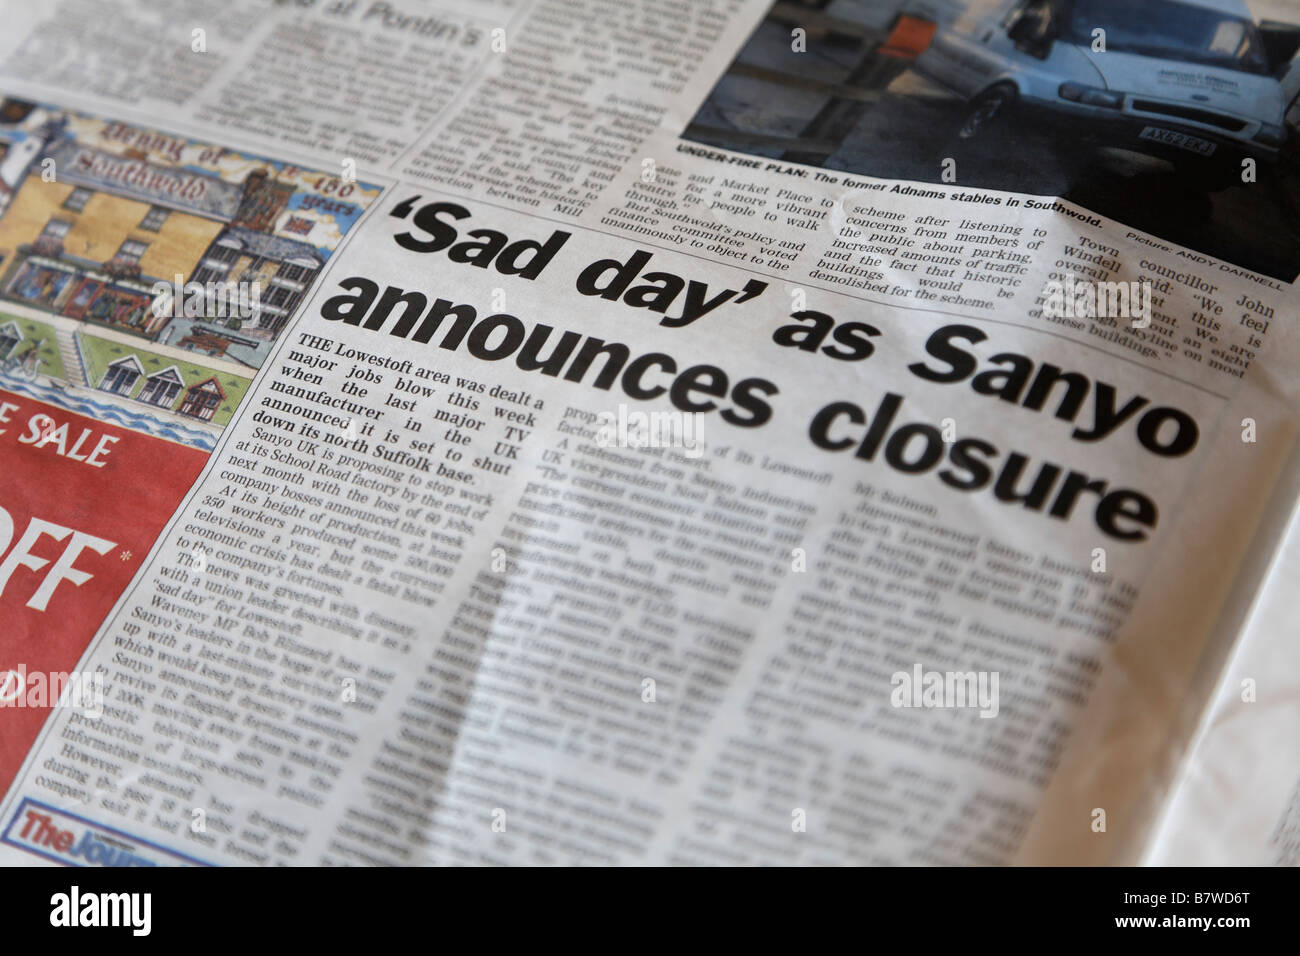 Lowestoft Journal report quotidiano su Sanyo la chiusura degli stabilimenti Suffolk in Inghilterra Foto Stock